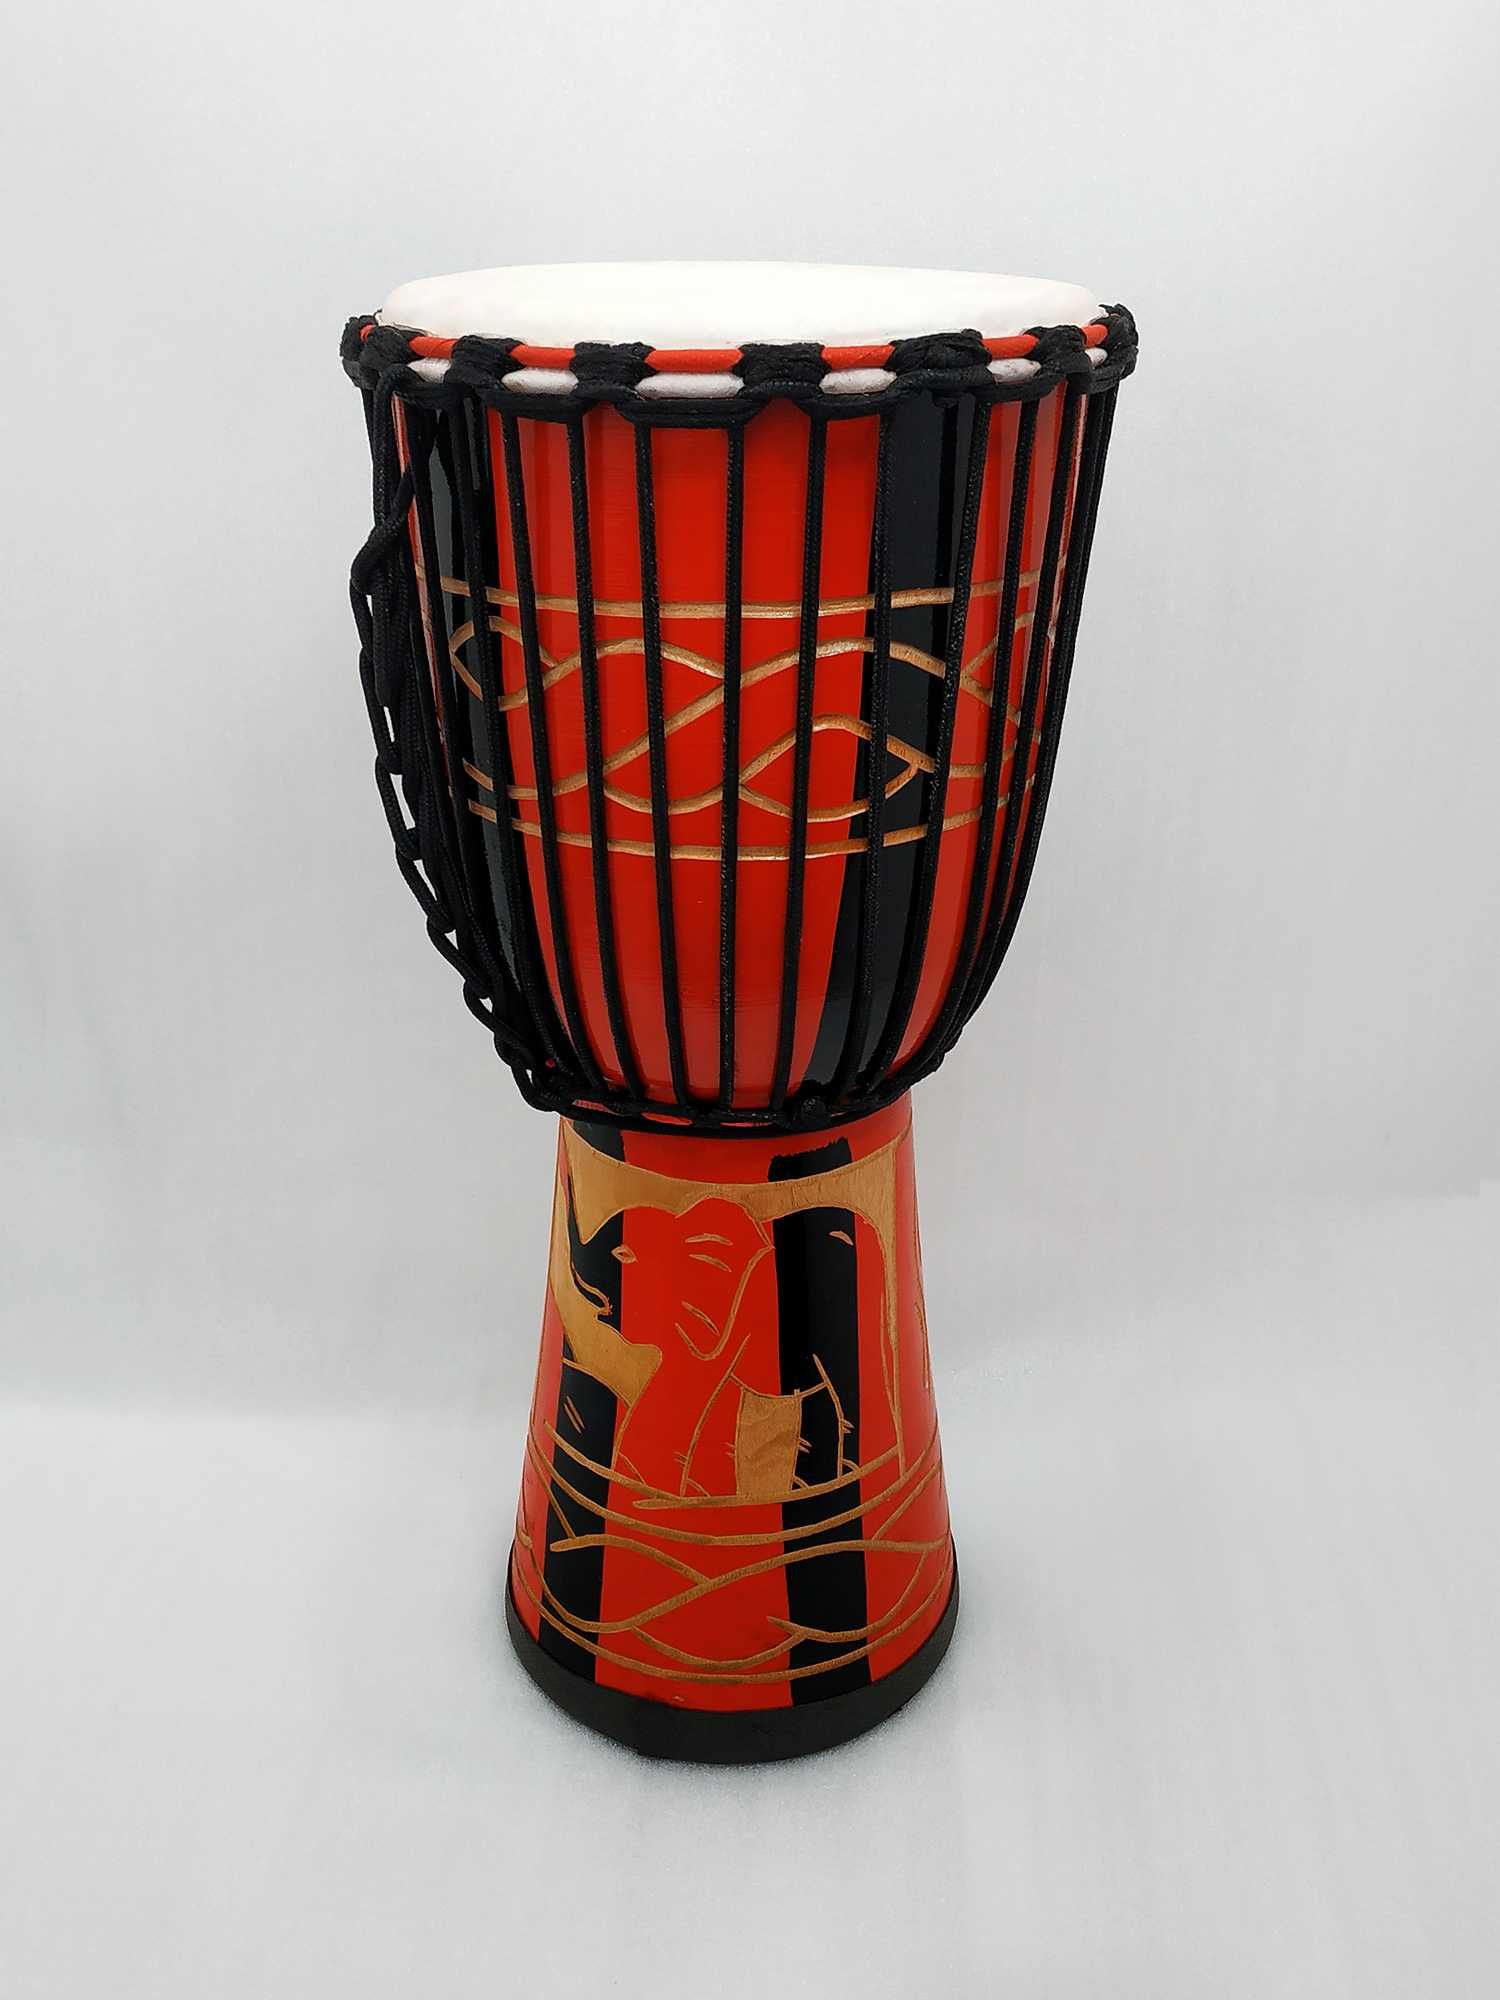 Джебме африканский барабан Djembe (дерево, кожа)